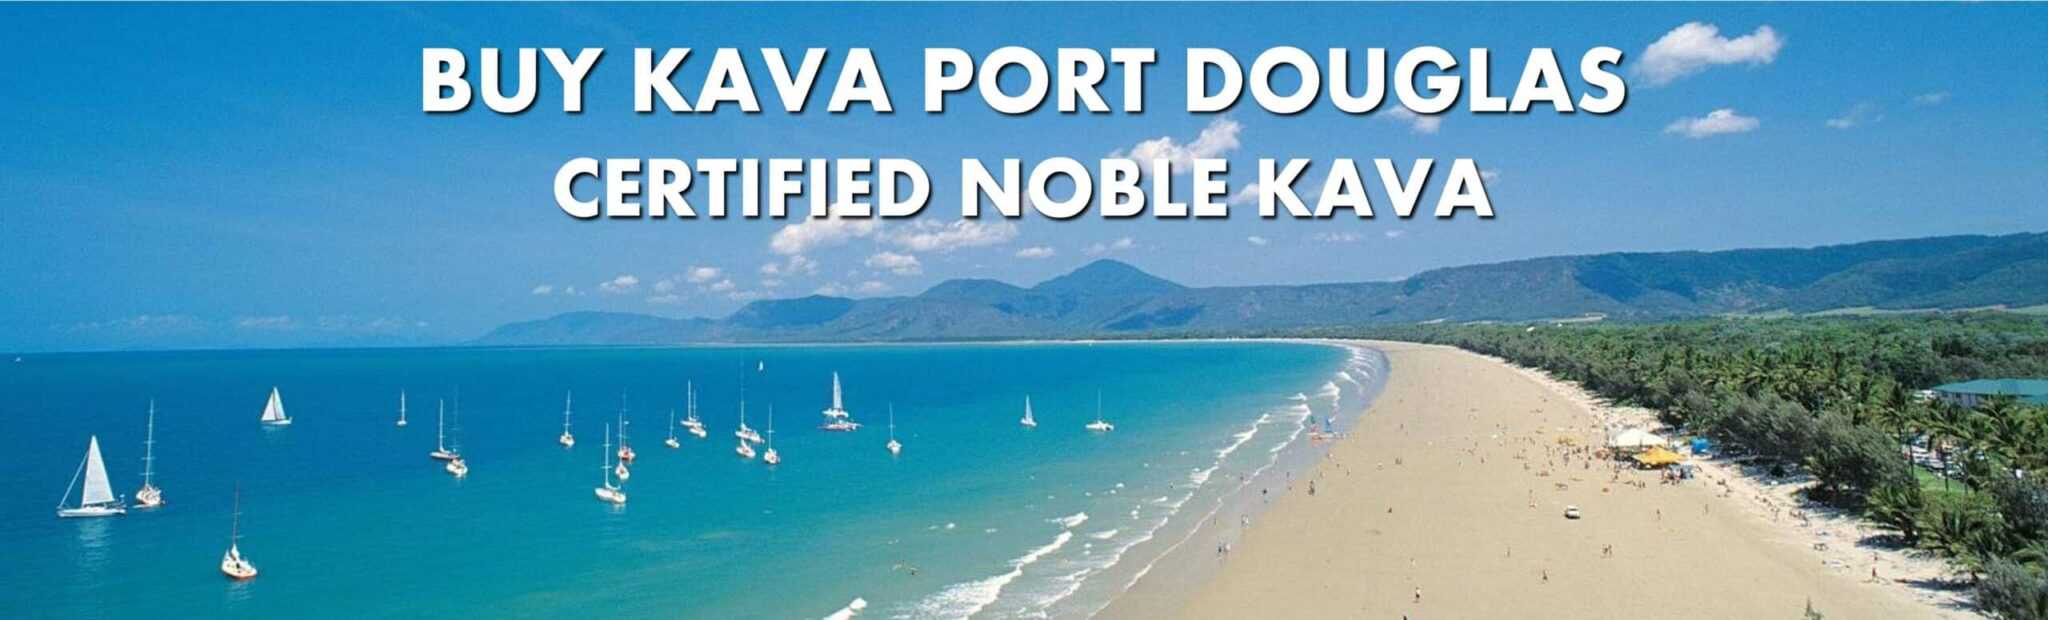 Beach scene in Port Douglas Queensland with caption Buy Kava Port Douglas Certified Noble Kava